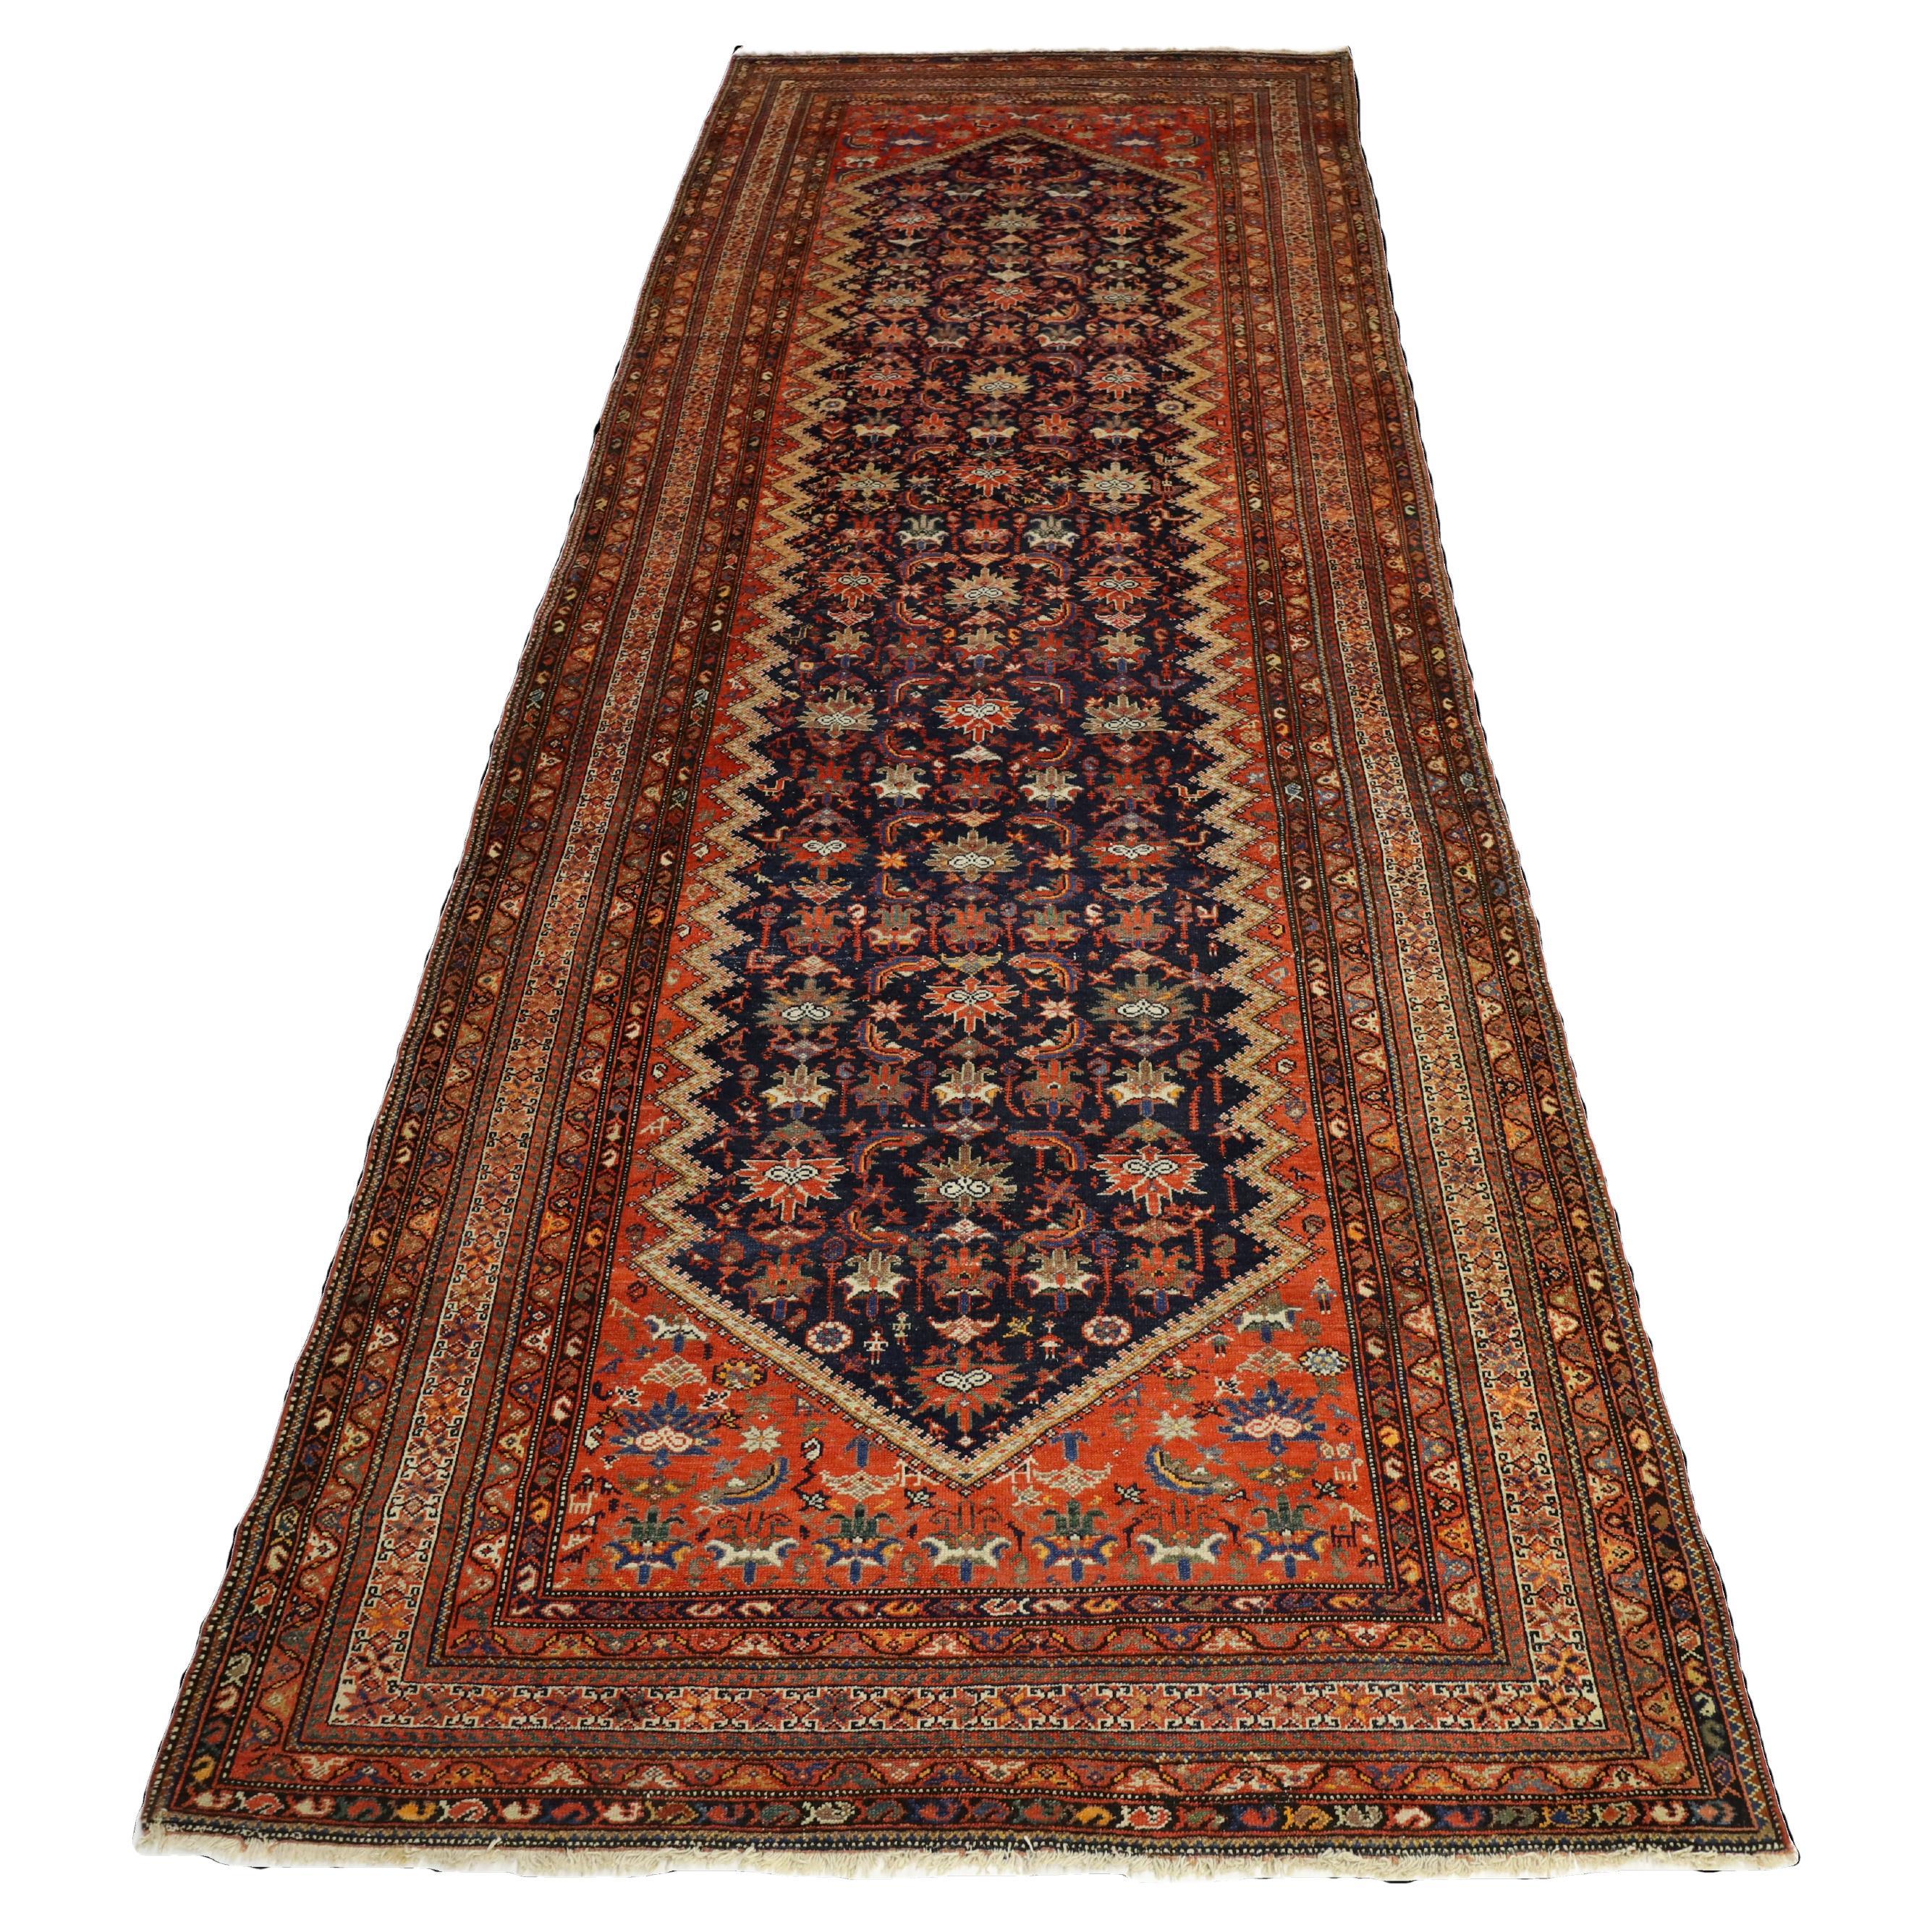 Antiker Malayer-Teppich in Galeriegröße, marineblau, rot und elfenbeinfarben - 6 x 16